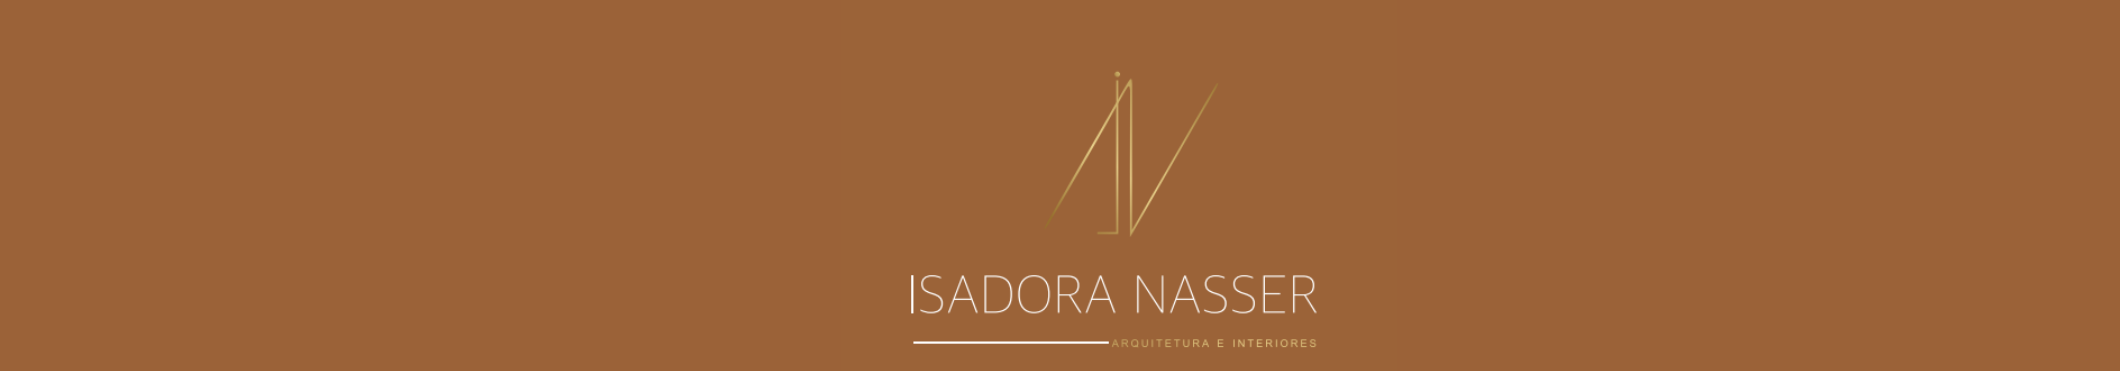 Isadora Nasser 的个人资料横幅